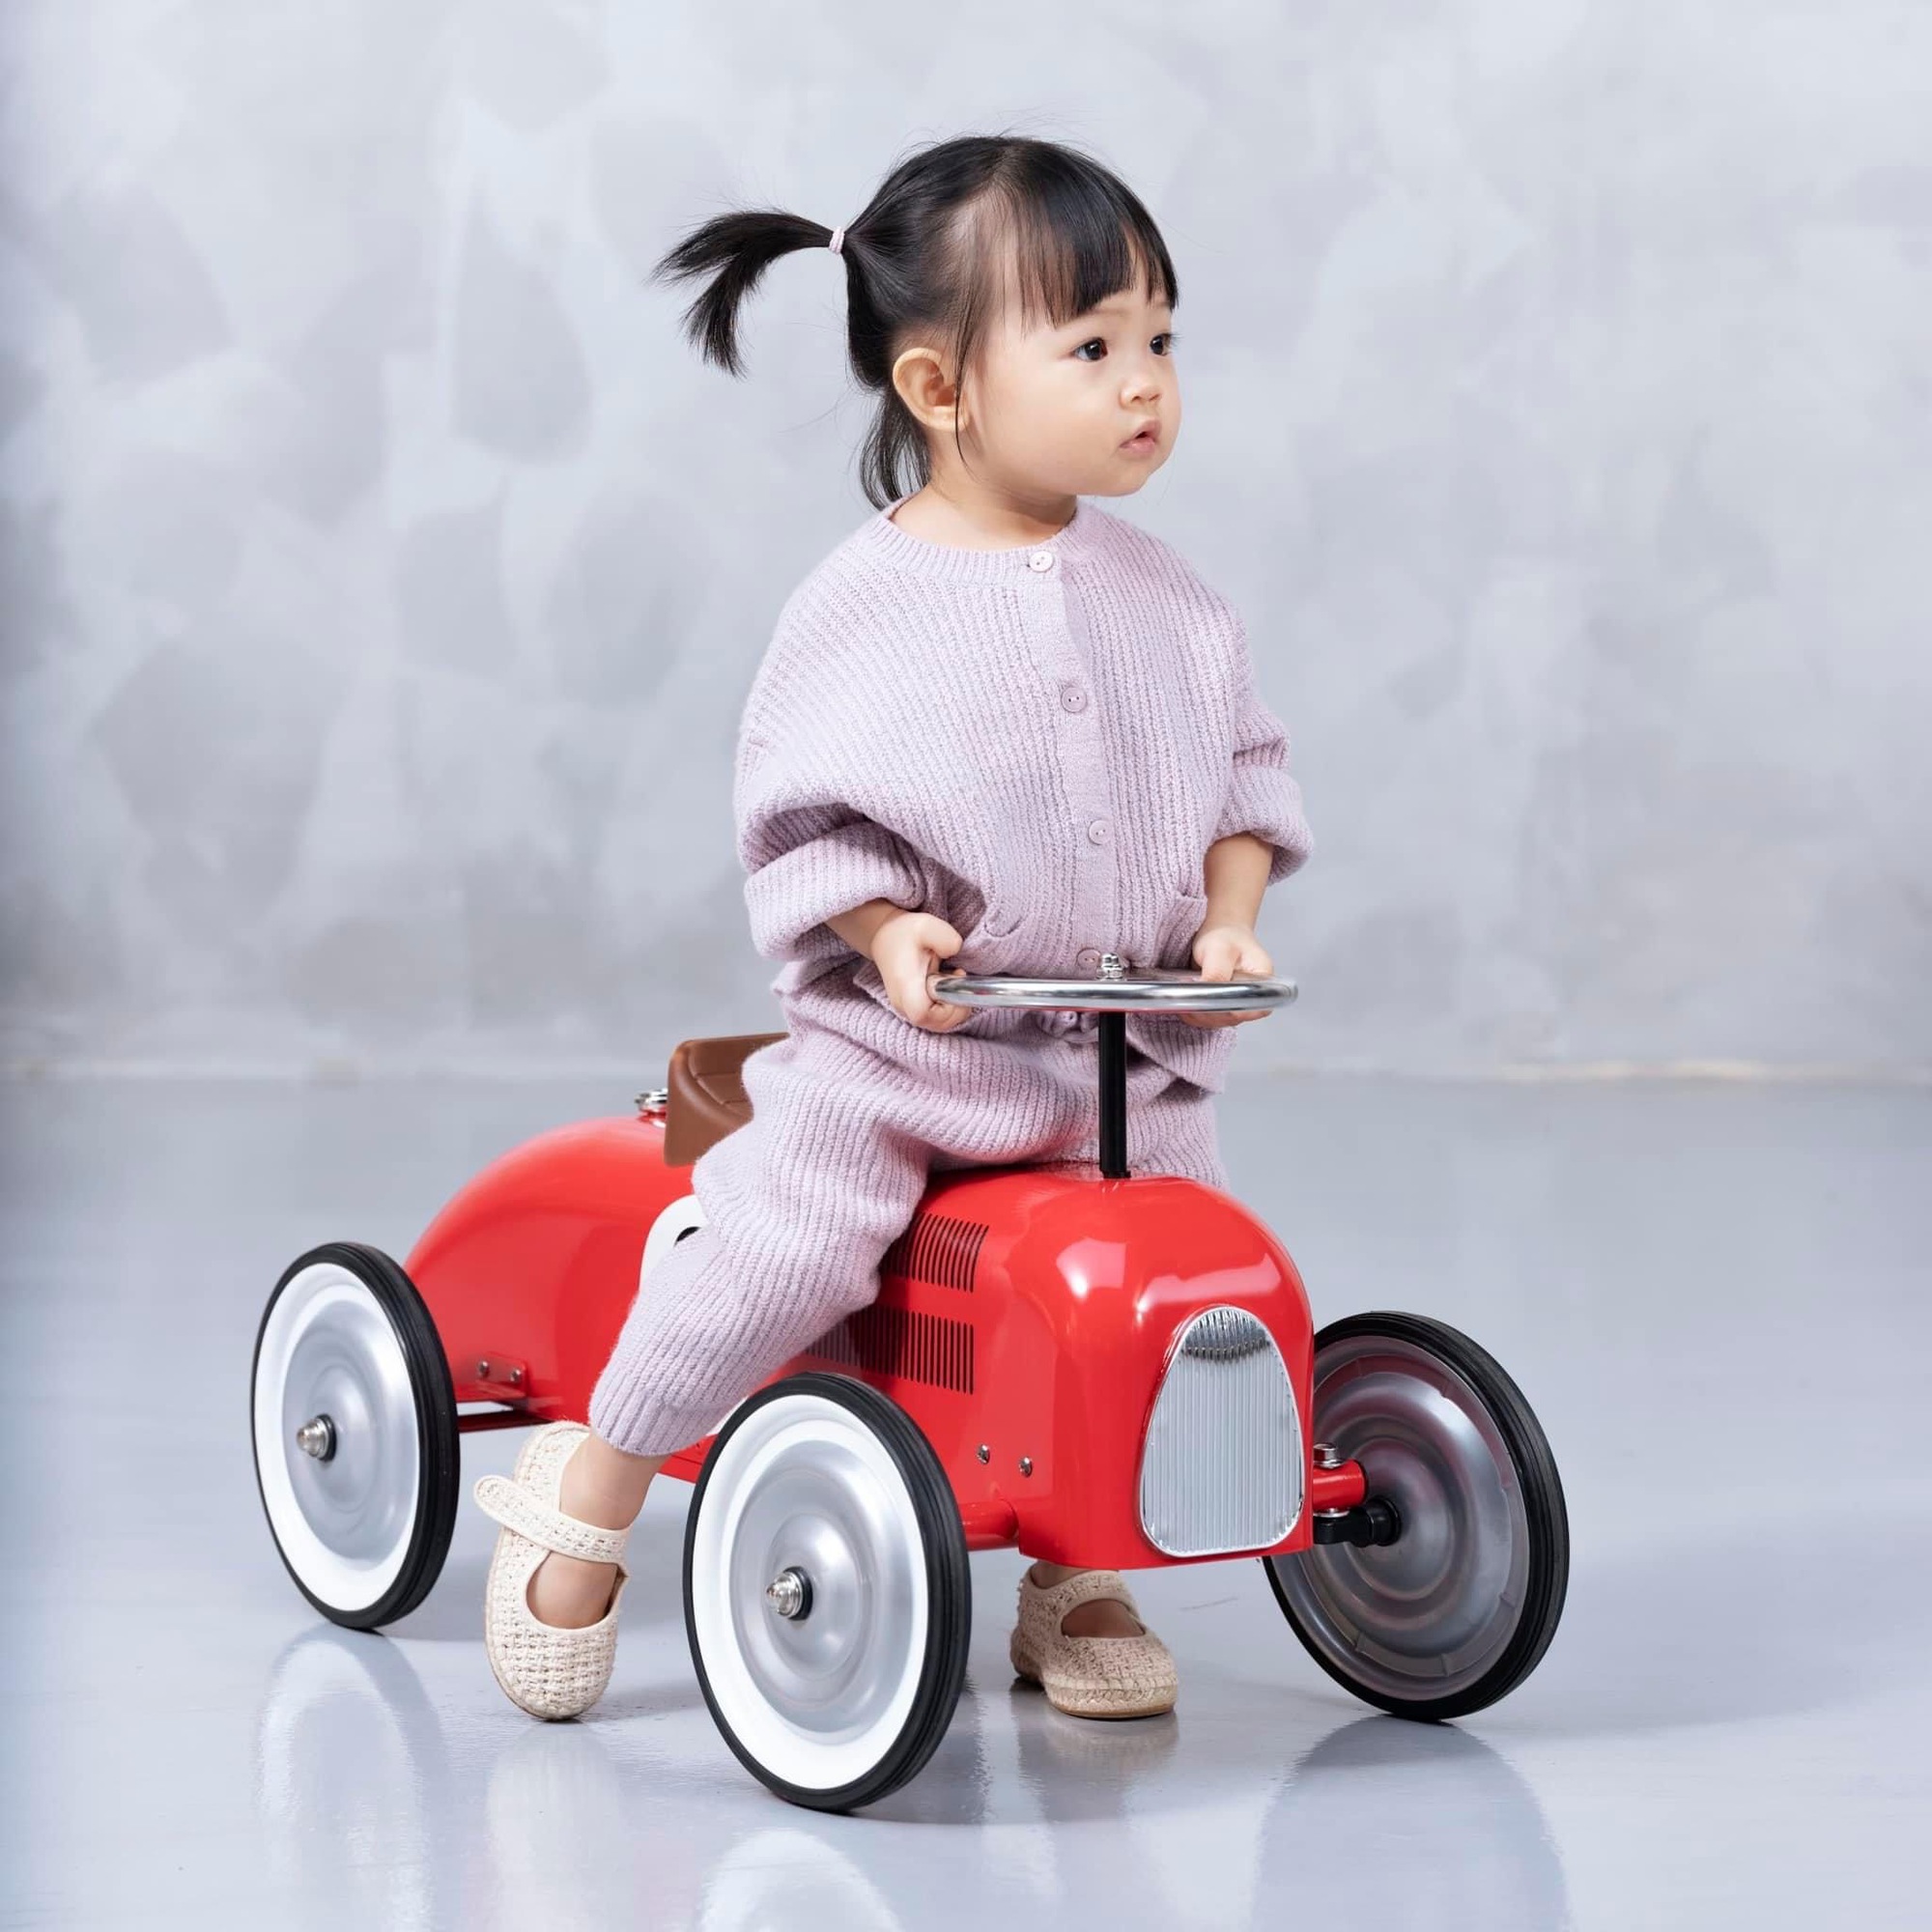 Con gái Cường Đô La được bố mẹ cưng chiều, sở hữu loạt "siêu xe" khi mới 3 tuổi - Ảnh 3.